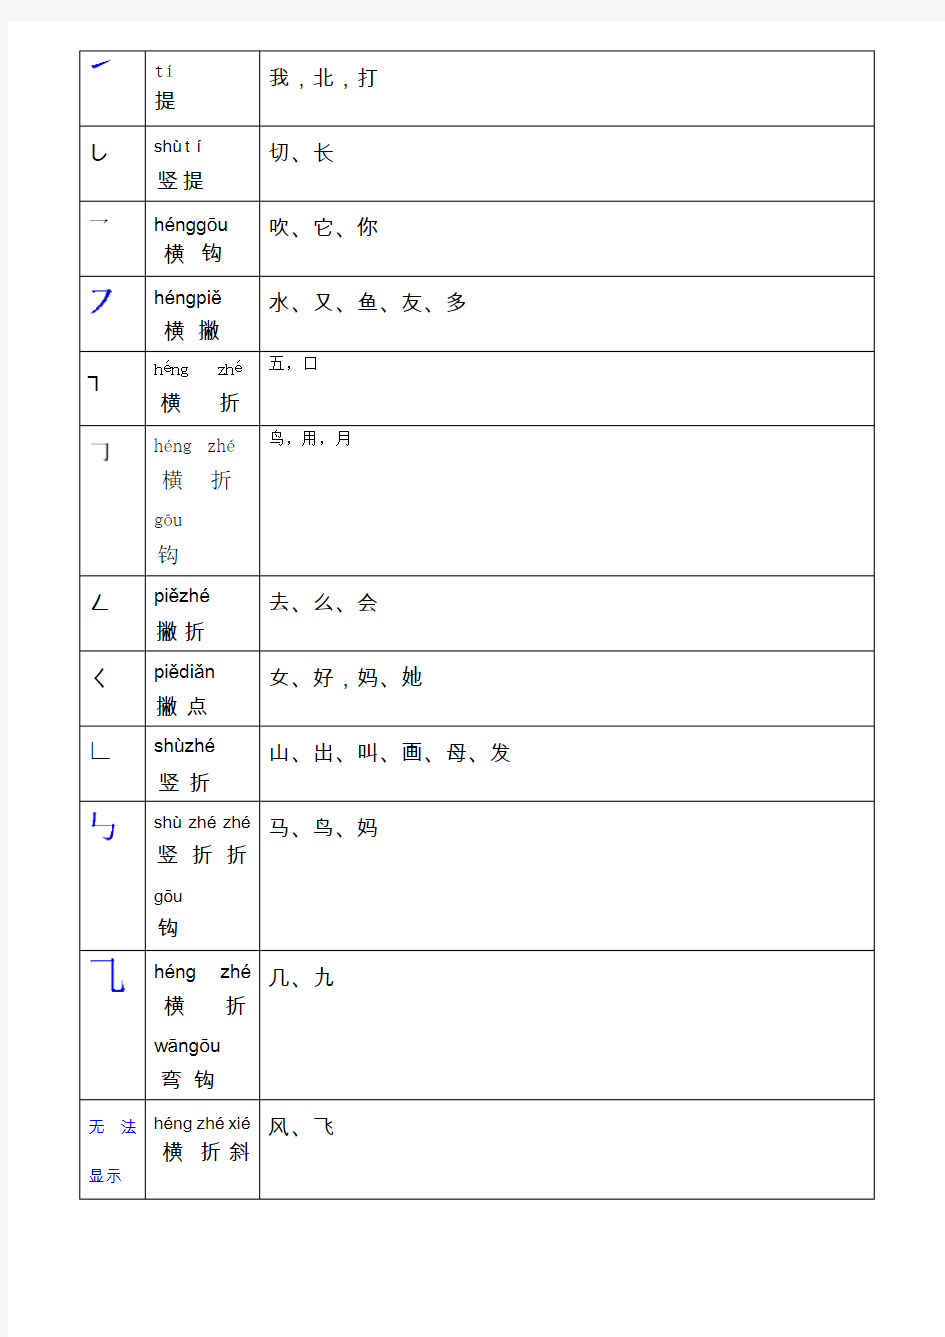 小学一年级语文汉字笔画名称表基本笔画的书写汉语拼音发音表